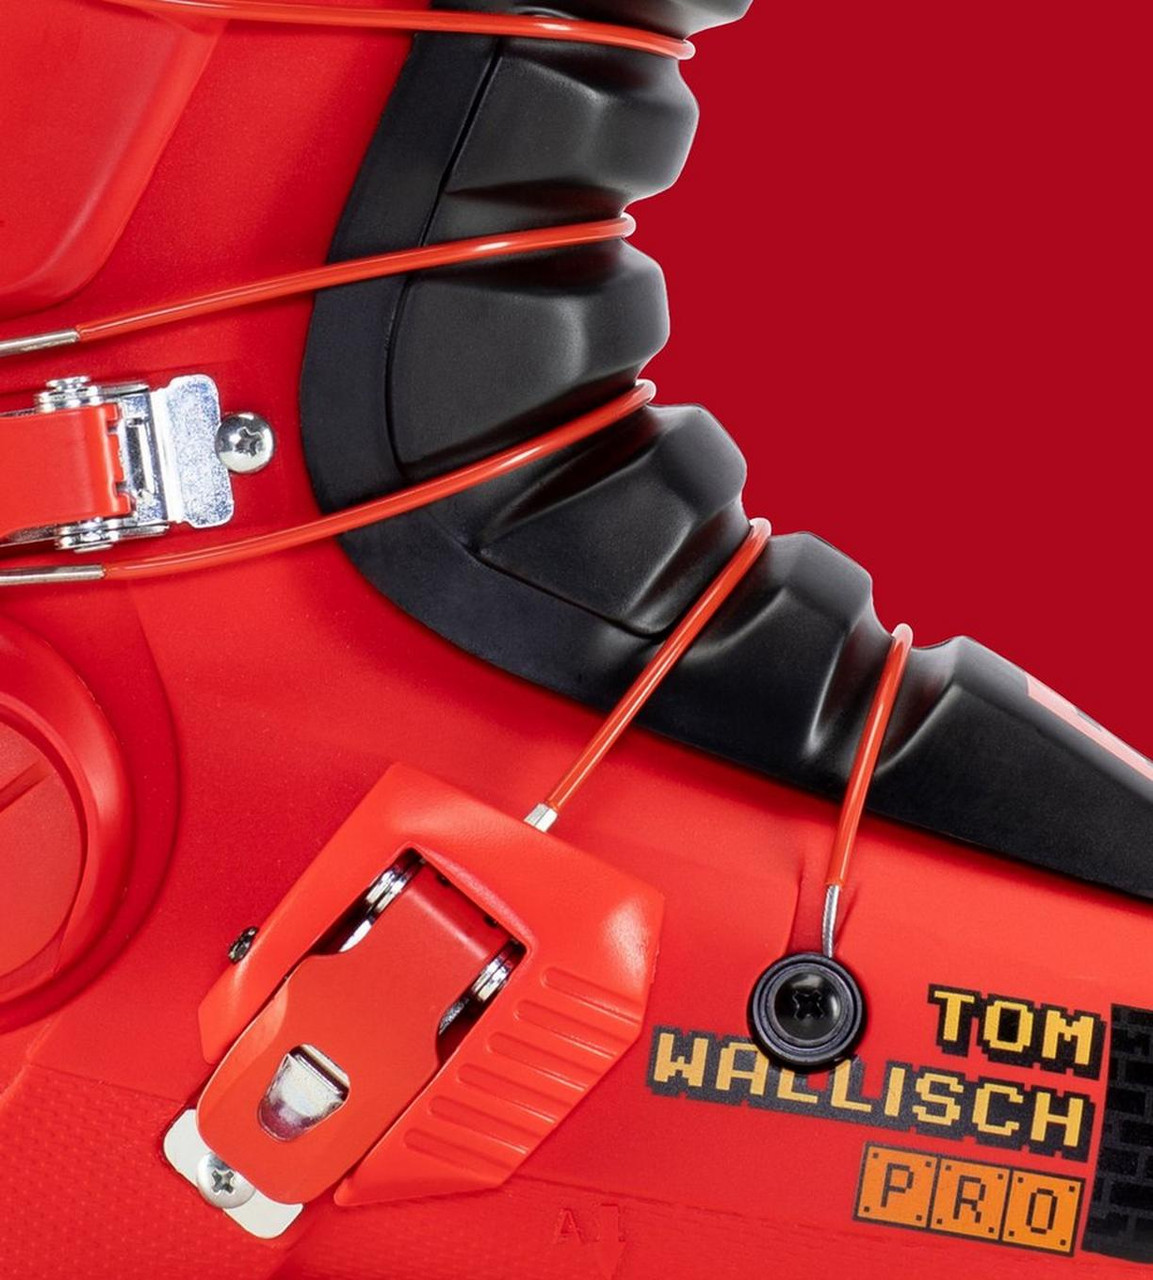 Full Tilt Tom Wallisch Pro LTC Ski Boots 2021